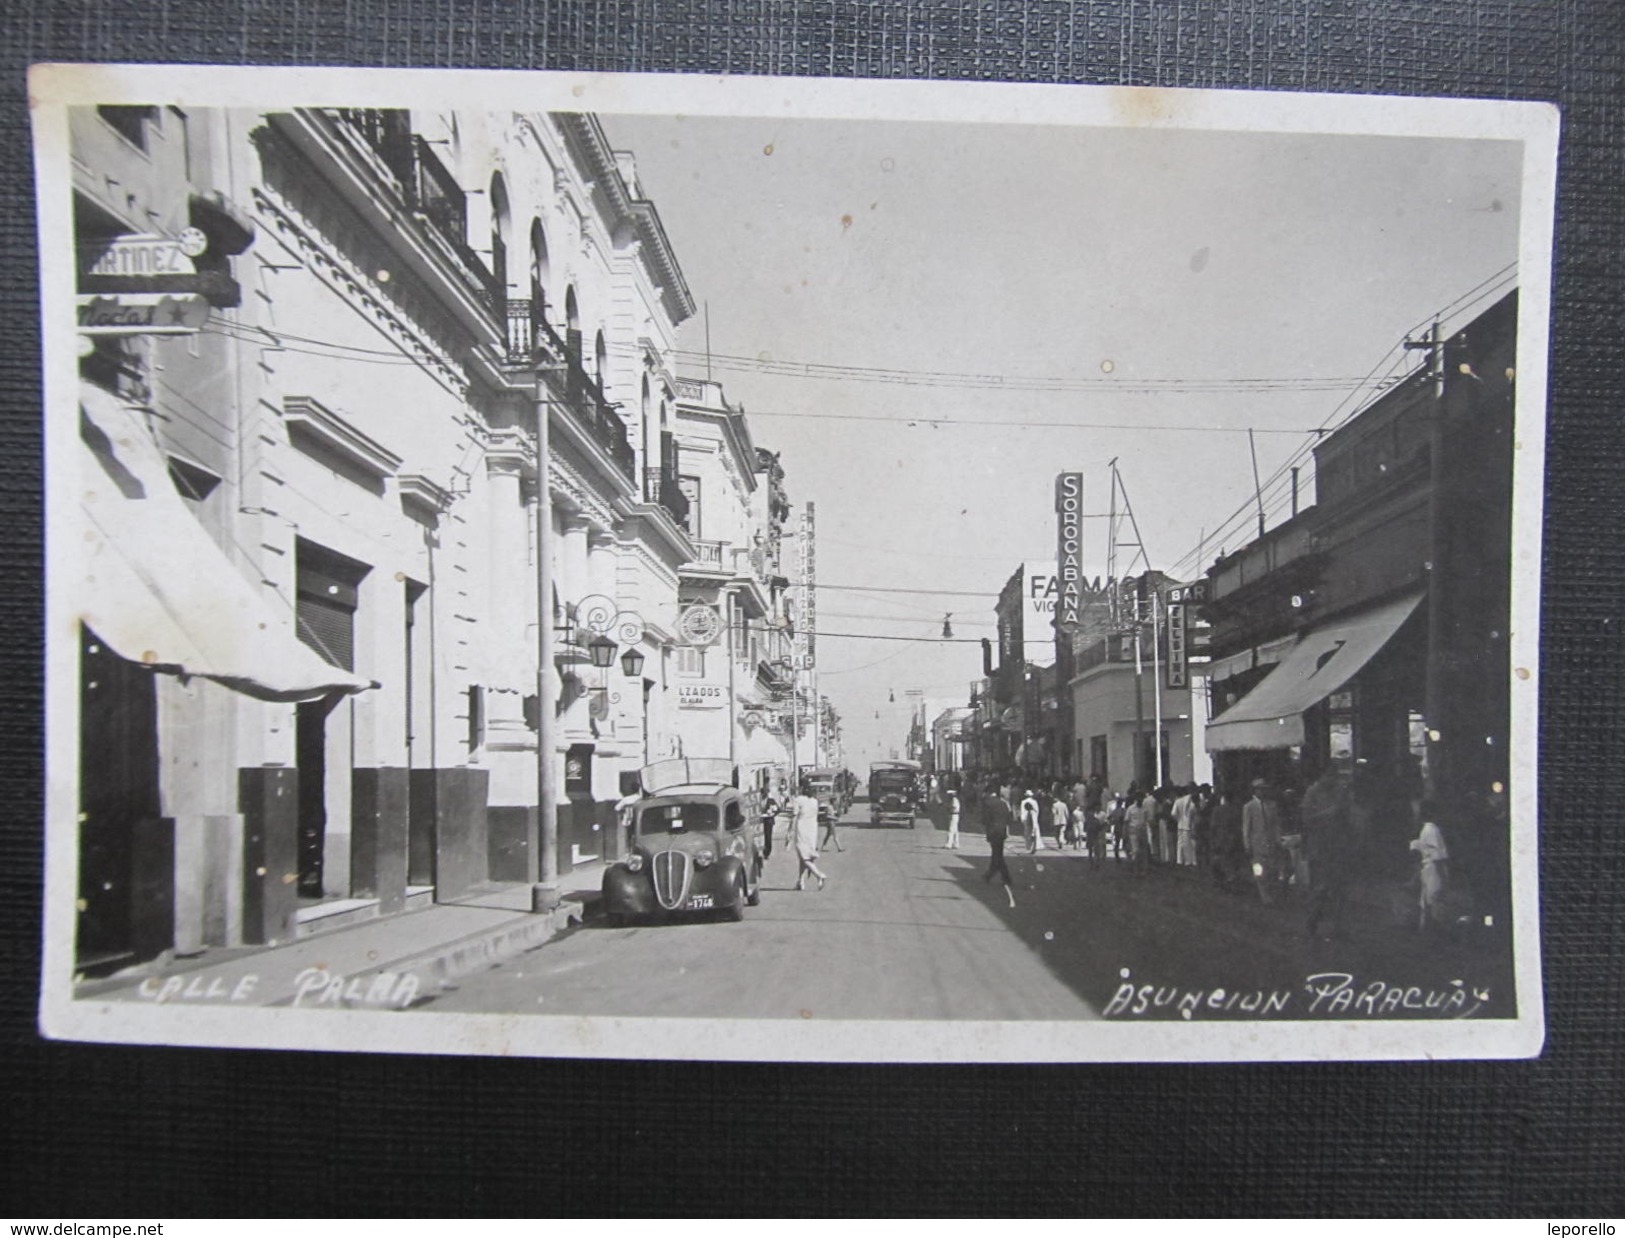 AK ASUNCION Calle Palma Paraguay Ca:1930 AUto  // D*23653 - Paraguay